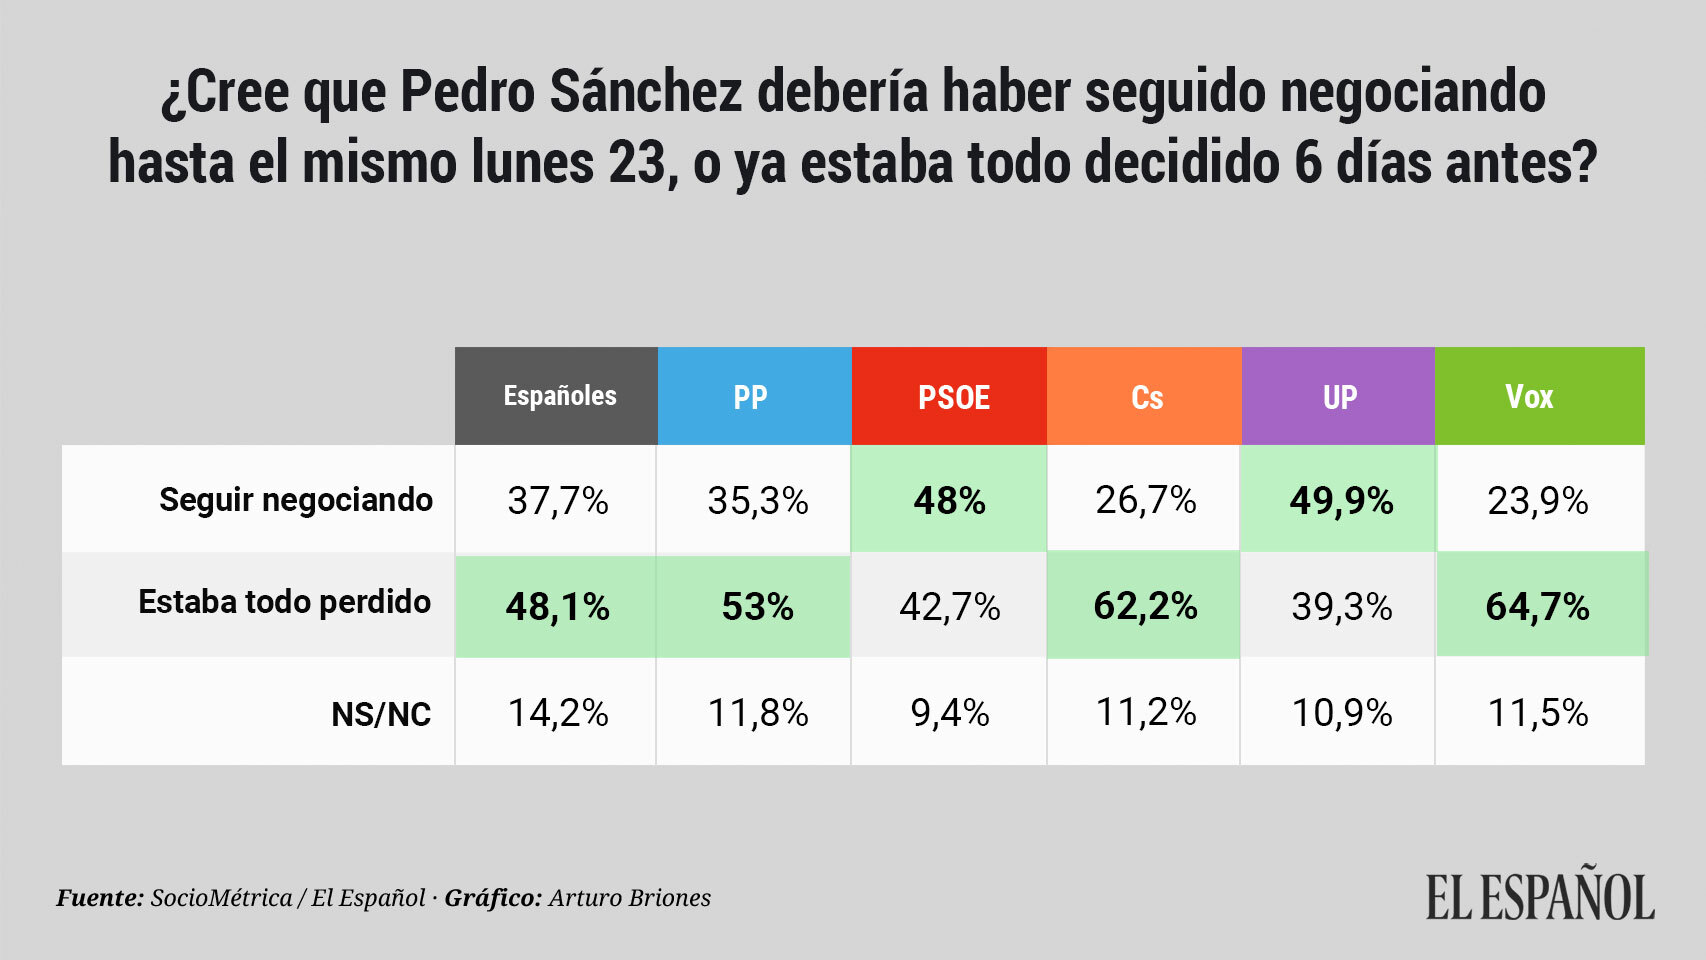 ¿Cree que Pedro Sánchez debería haber seguido negociando hasta el final?